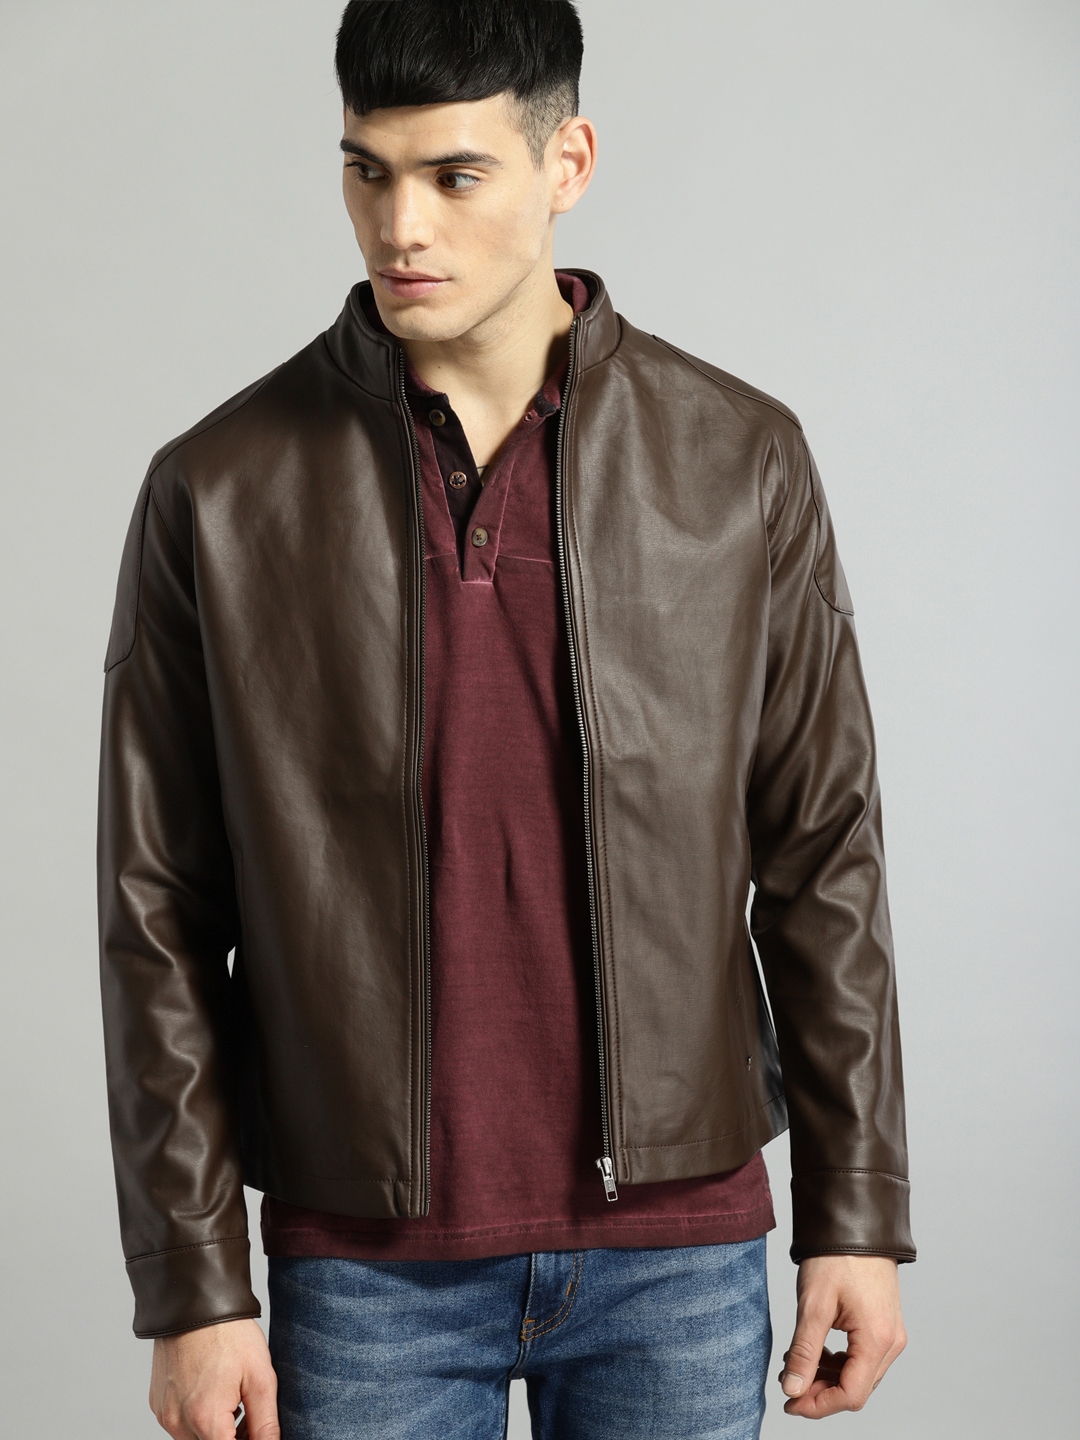 Buy Roadster Men Brown Solid Leather Jacket - Jackets for Men 7116622 ...